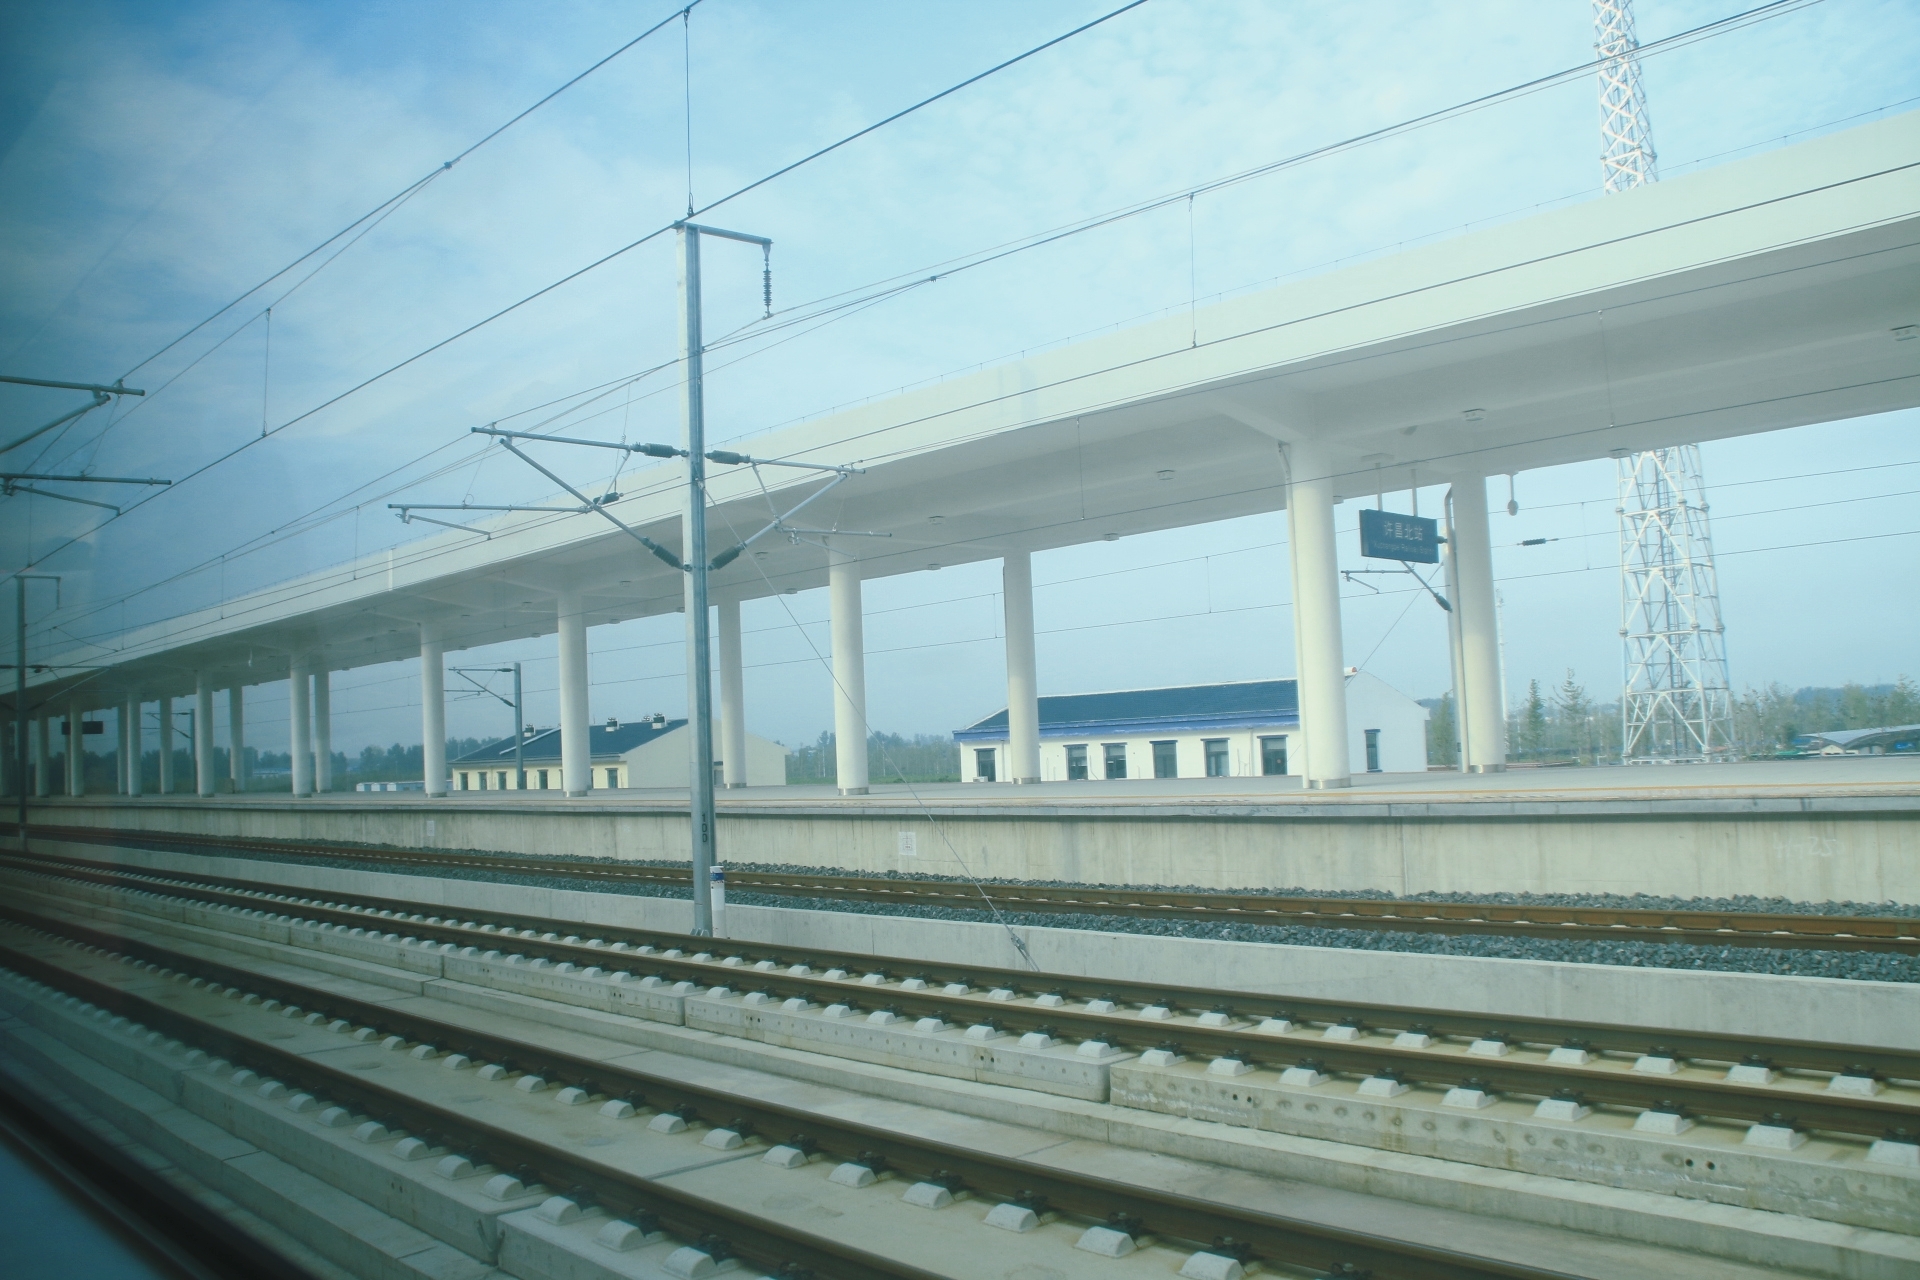 津宁市郊铁路计划年内开工 设计时速160公里